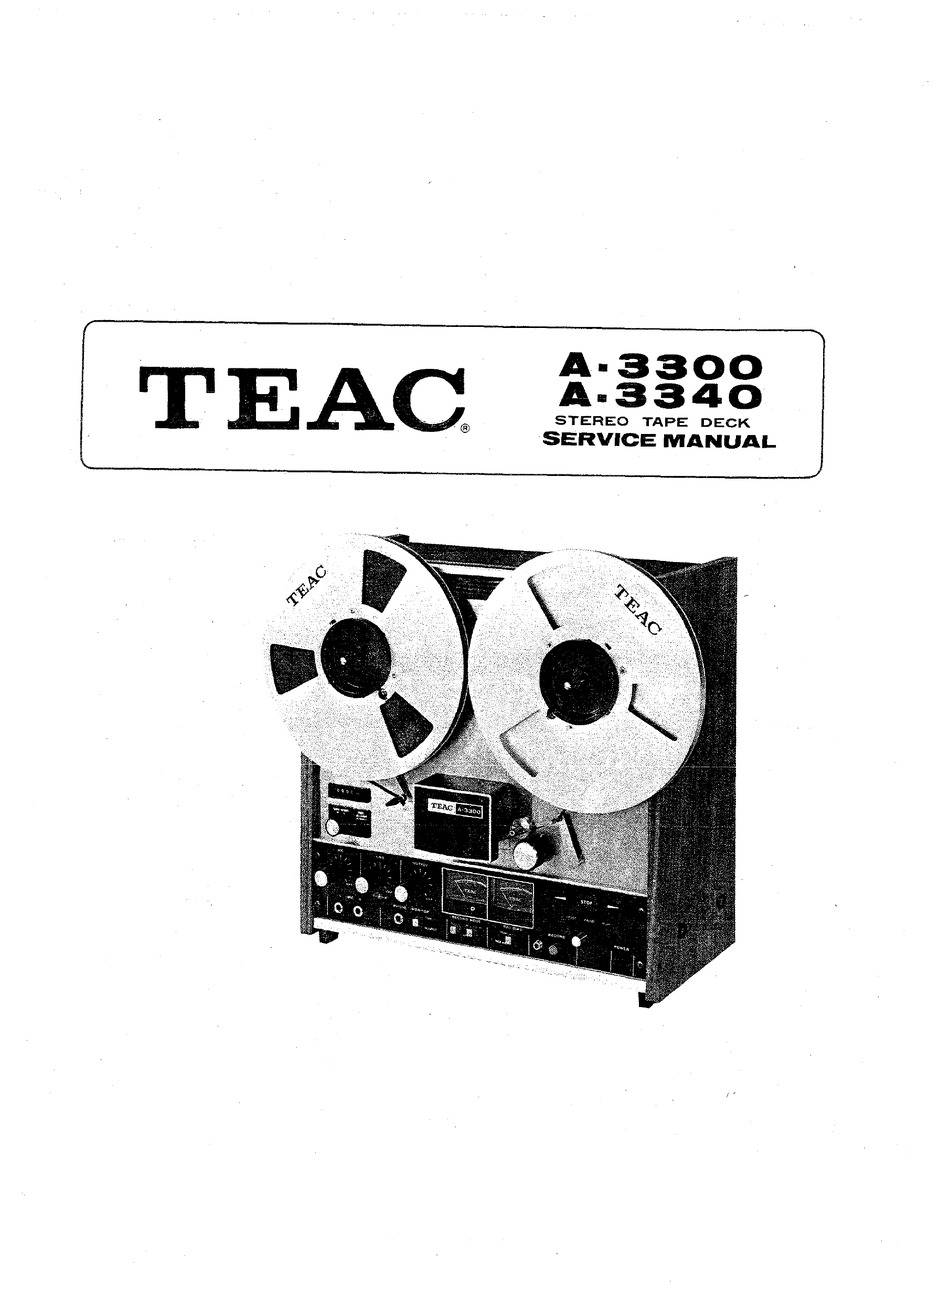 TEAC A-3300 (3300-11)